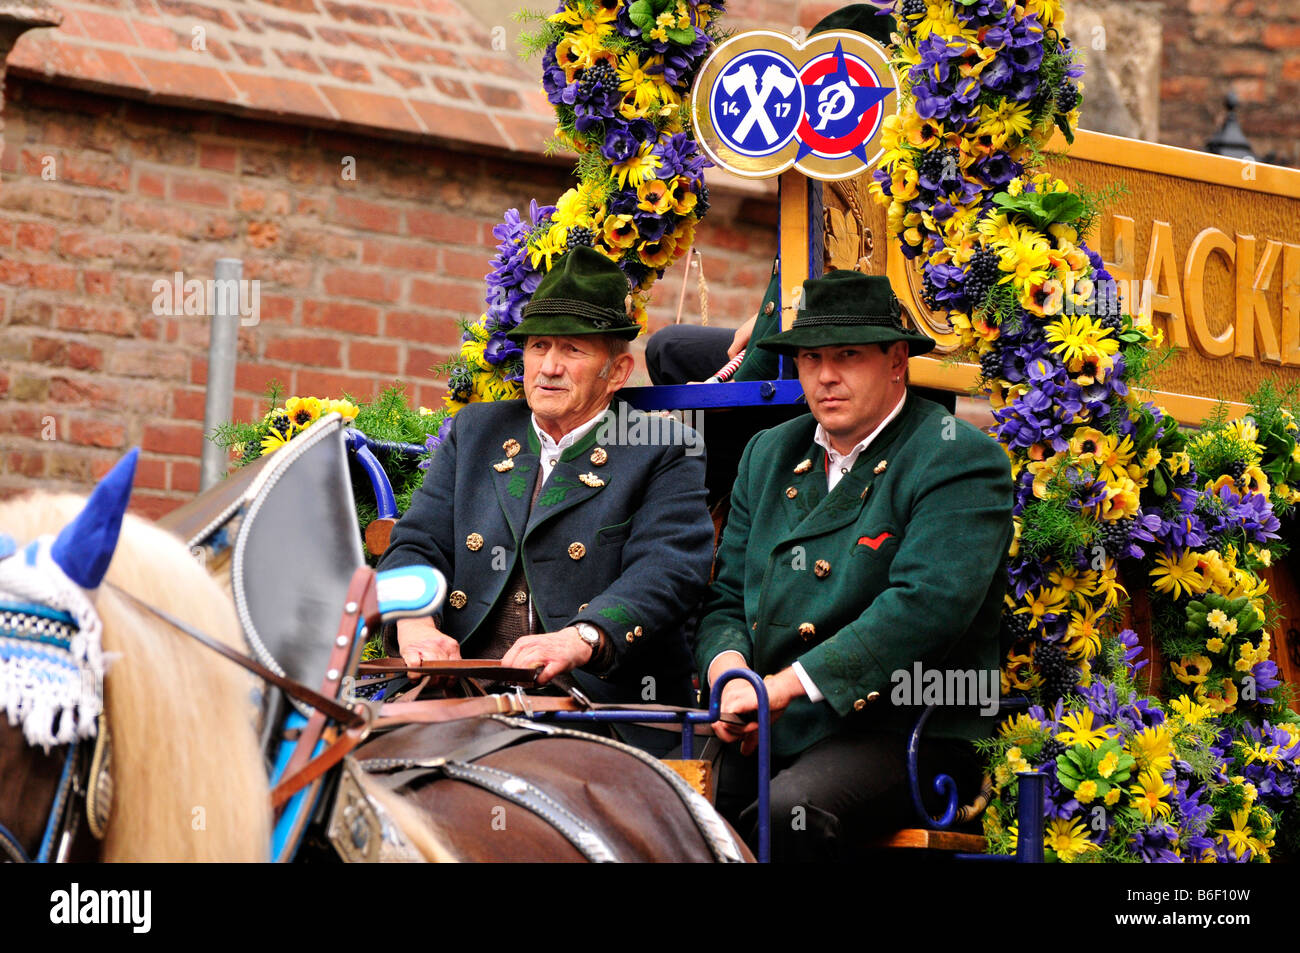 Wagon bière lors de la traditionnelle parade de costumes à l'Oktoberfest, Munich, Bavaria, Germany, Europe Banque D'Images